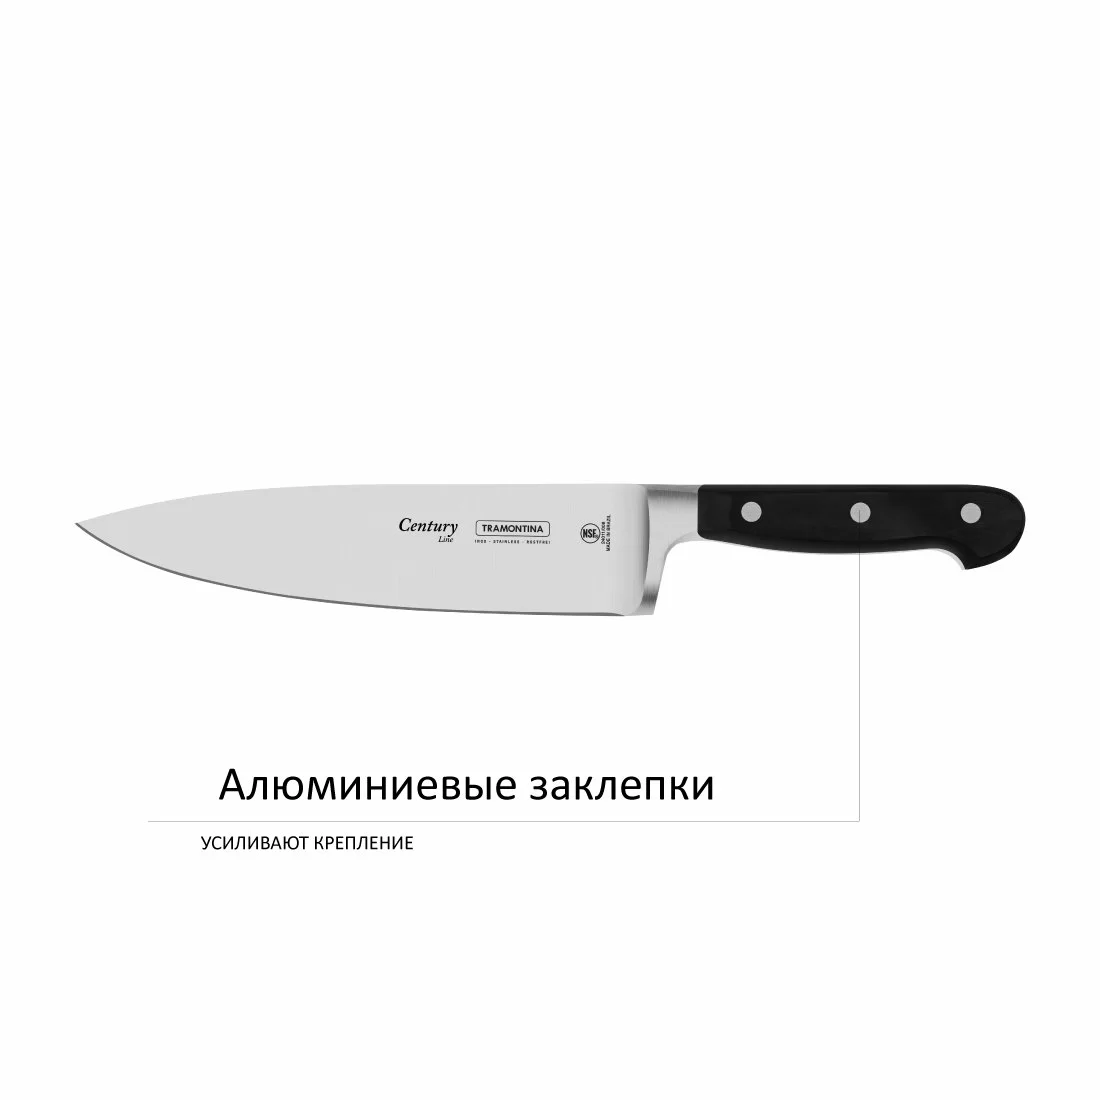 Нож шеф-повара Tramontina century 20см в блистере